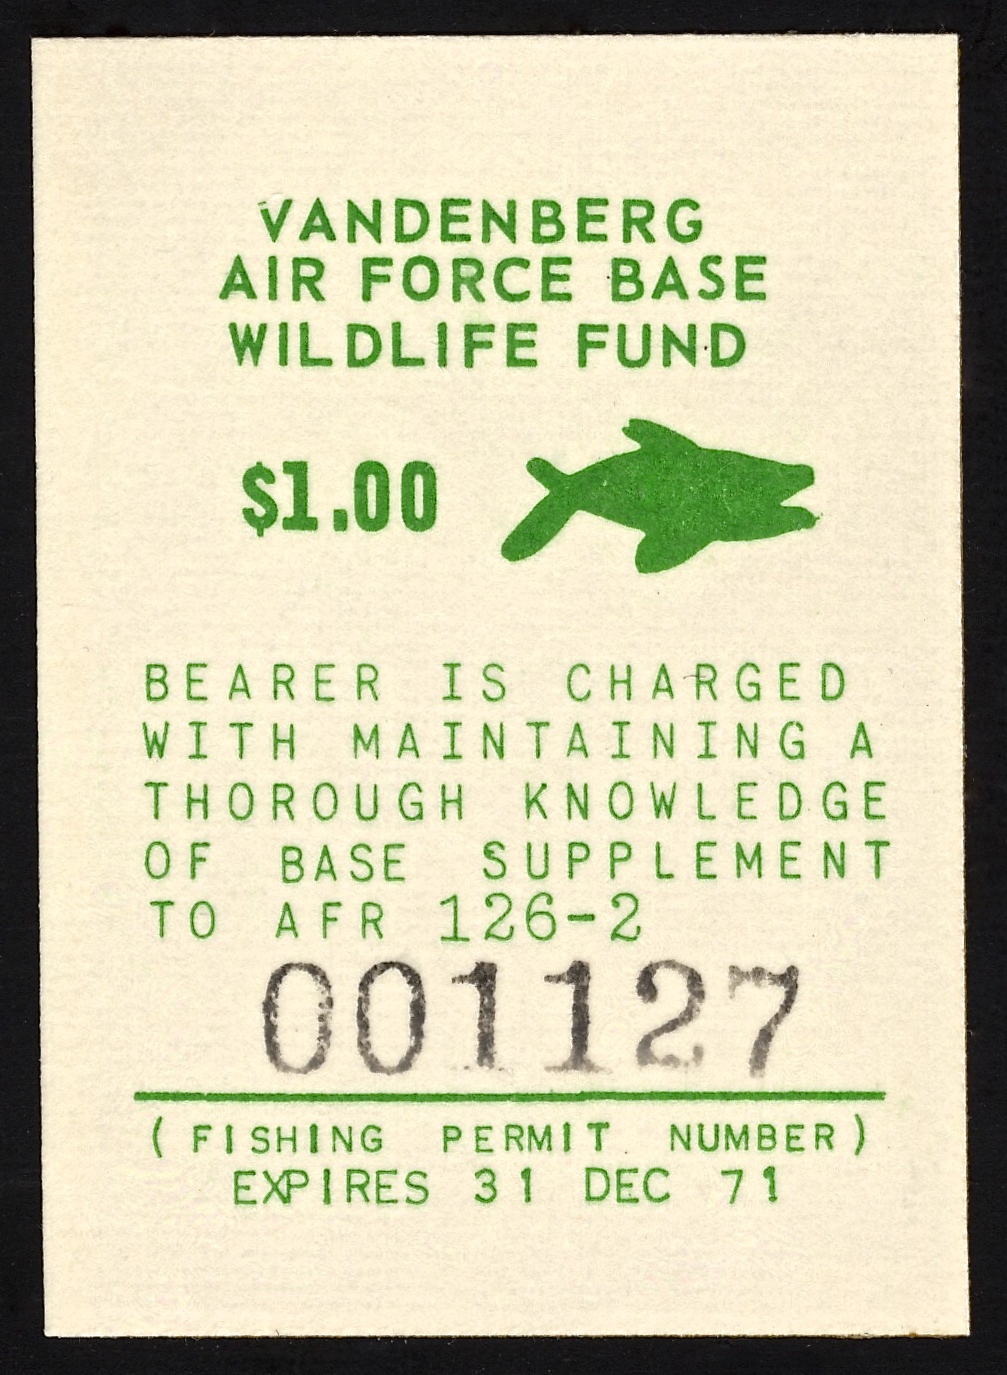 1971 VAFB Fishing Variety